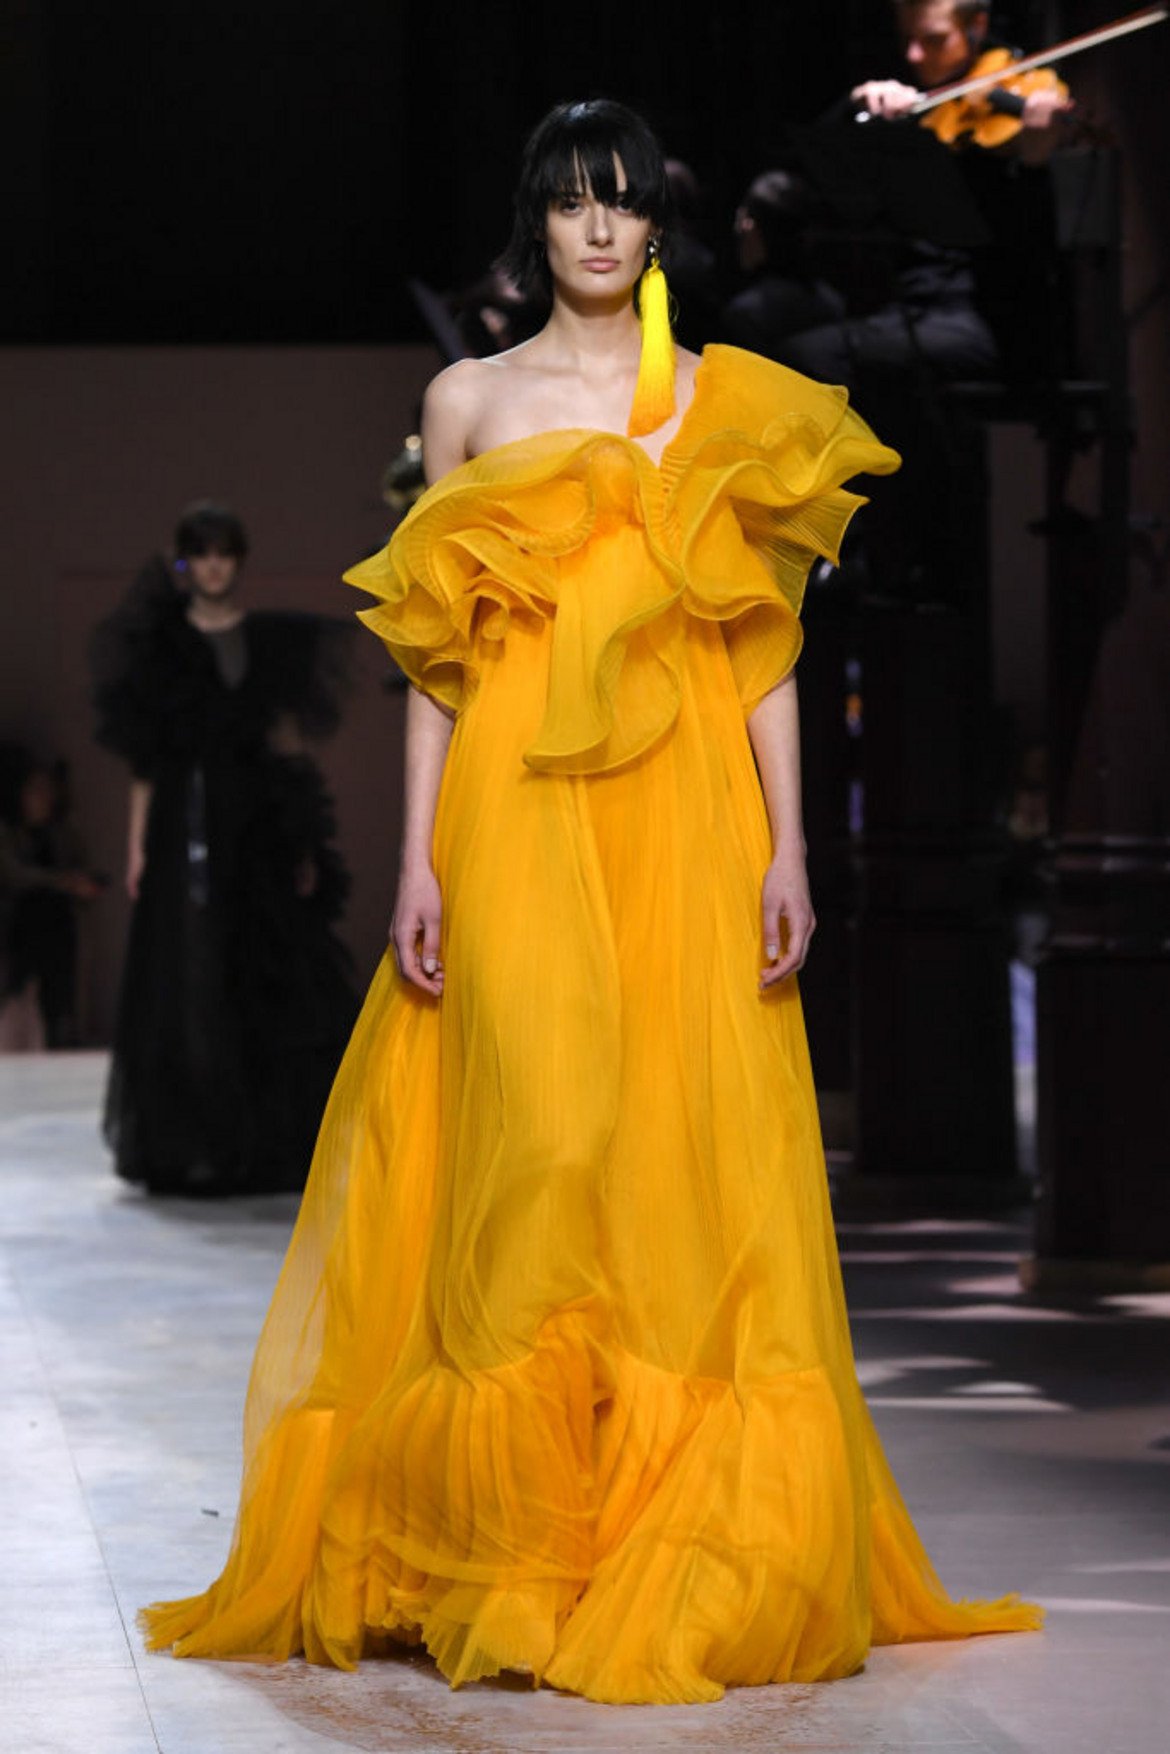 Шафран (Saffron)  
Живият нюанс на оранжево-жълто придава смелост, екзотика и оптимистичен облик на облеклото. 

Модел на Givenchy от колекцията висша мода пролет/лято 2020 г., част от Парижката седмица на модата през януари 2020 г.